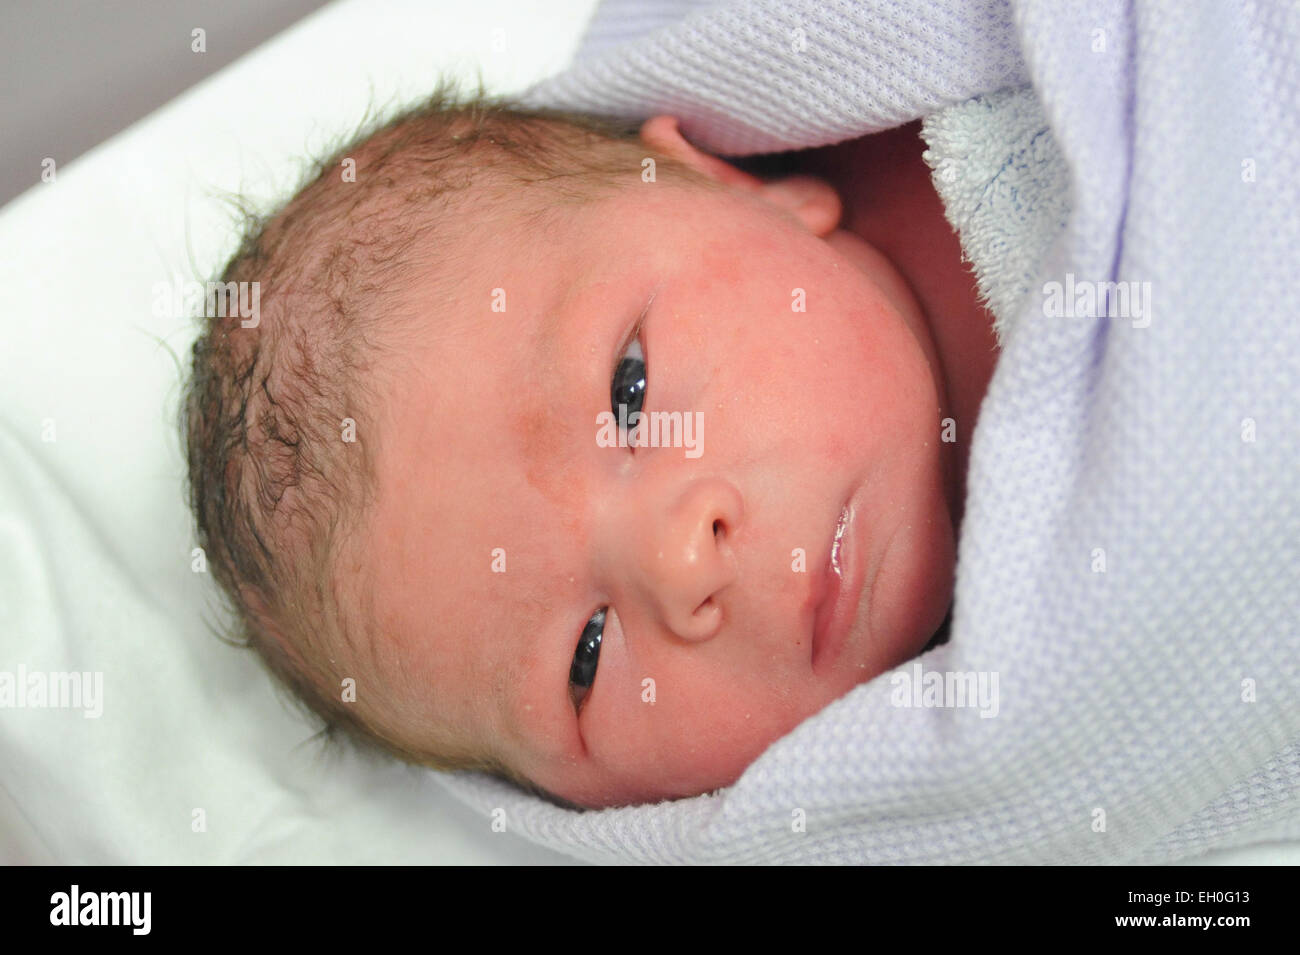 Un nouveau-né emmailloté dans une couverture de l'hôpital quelques instants après être né Banque D'Images